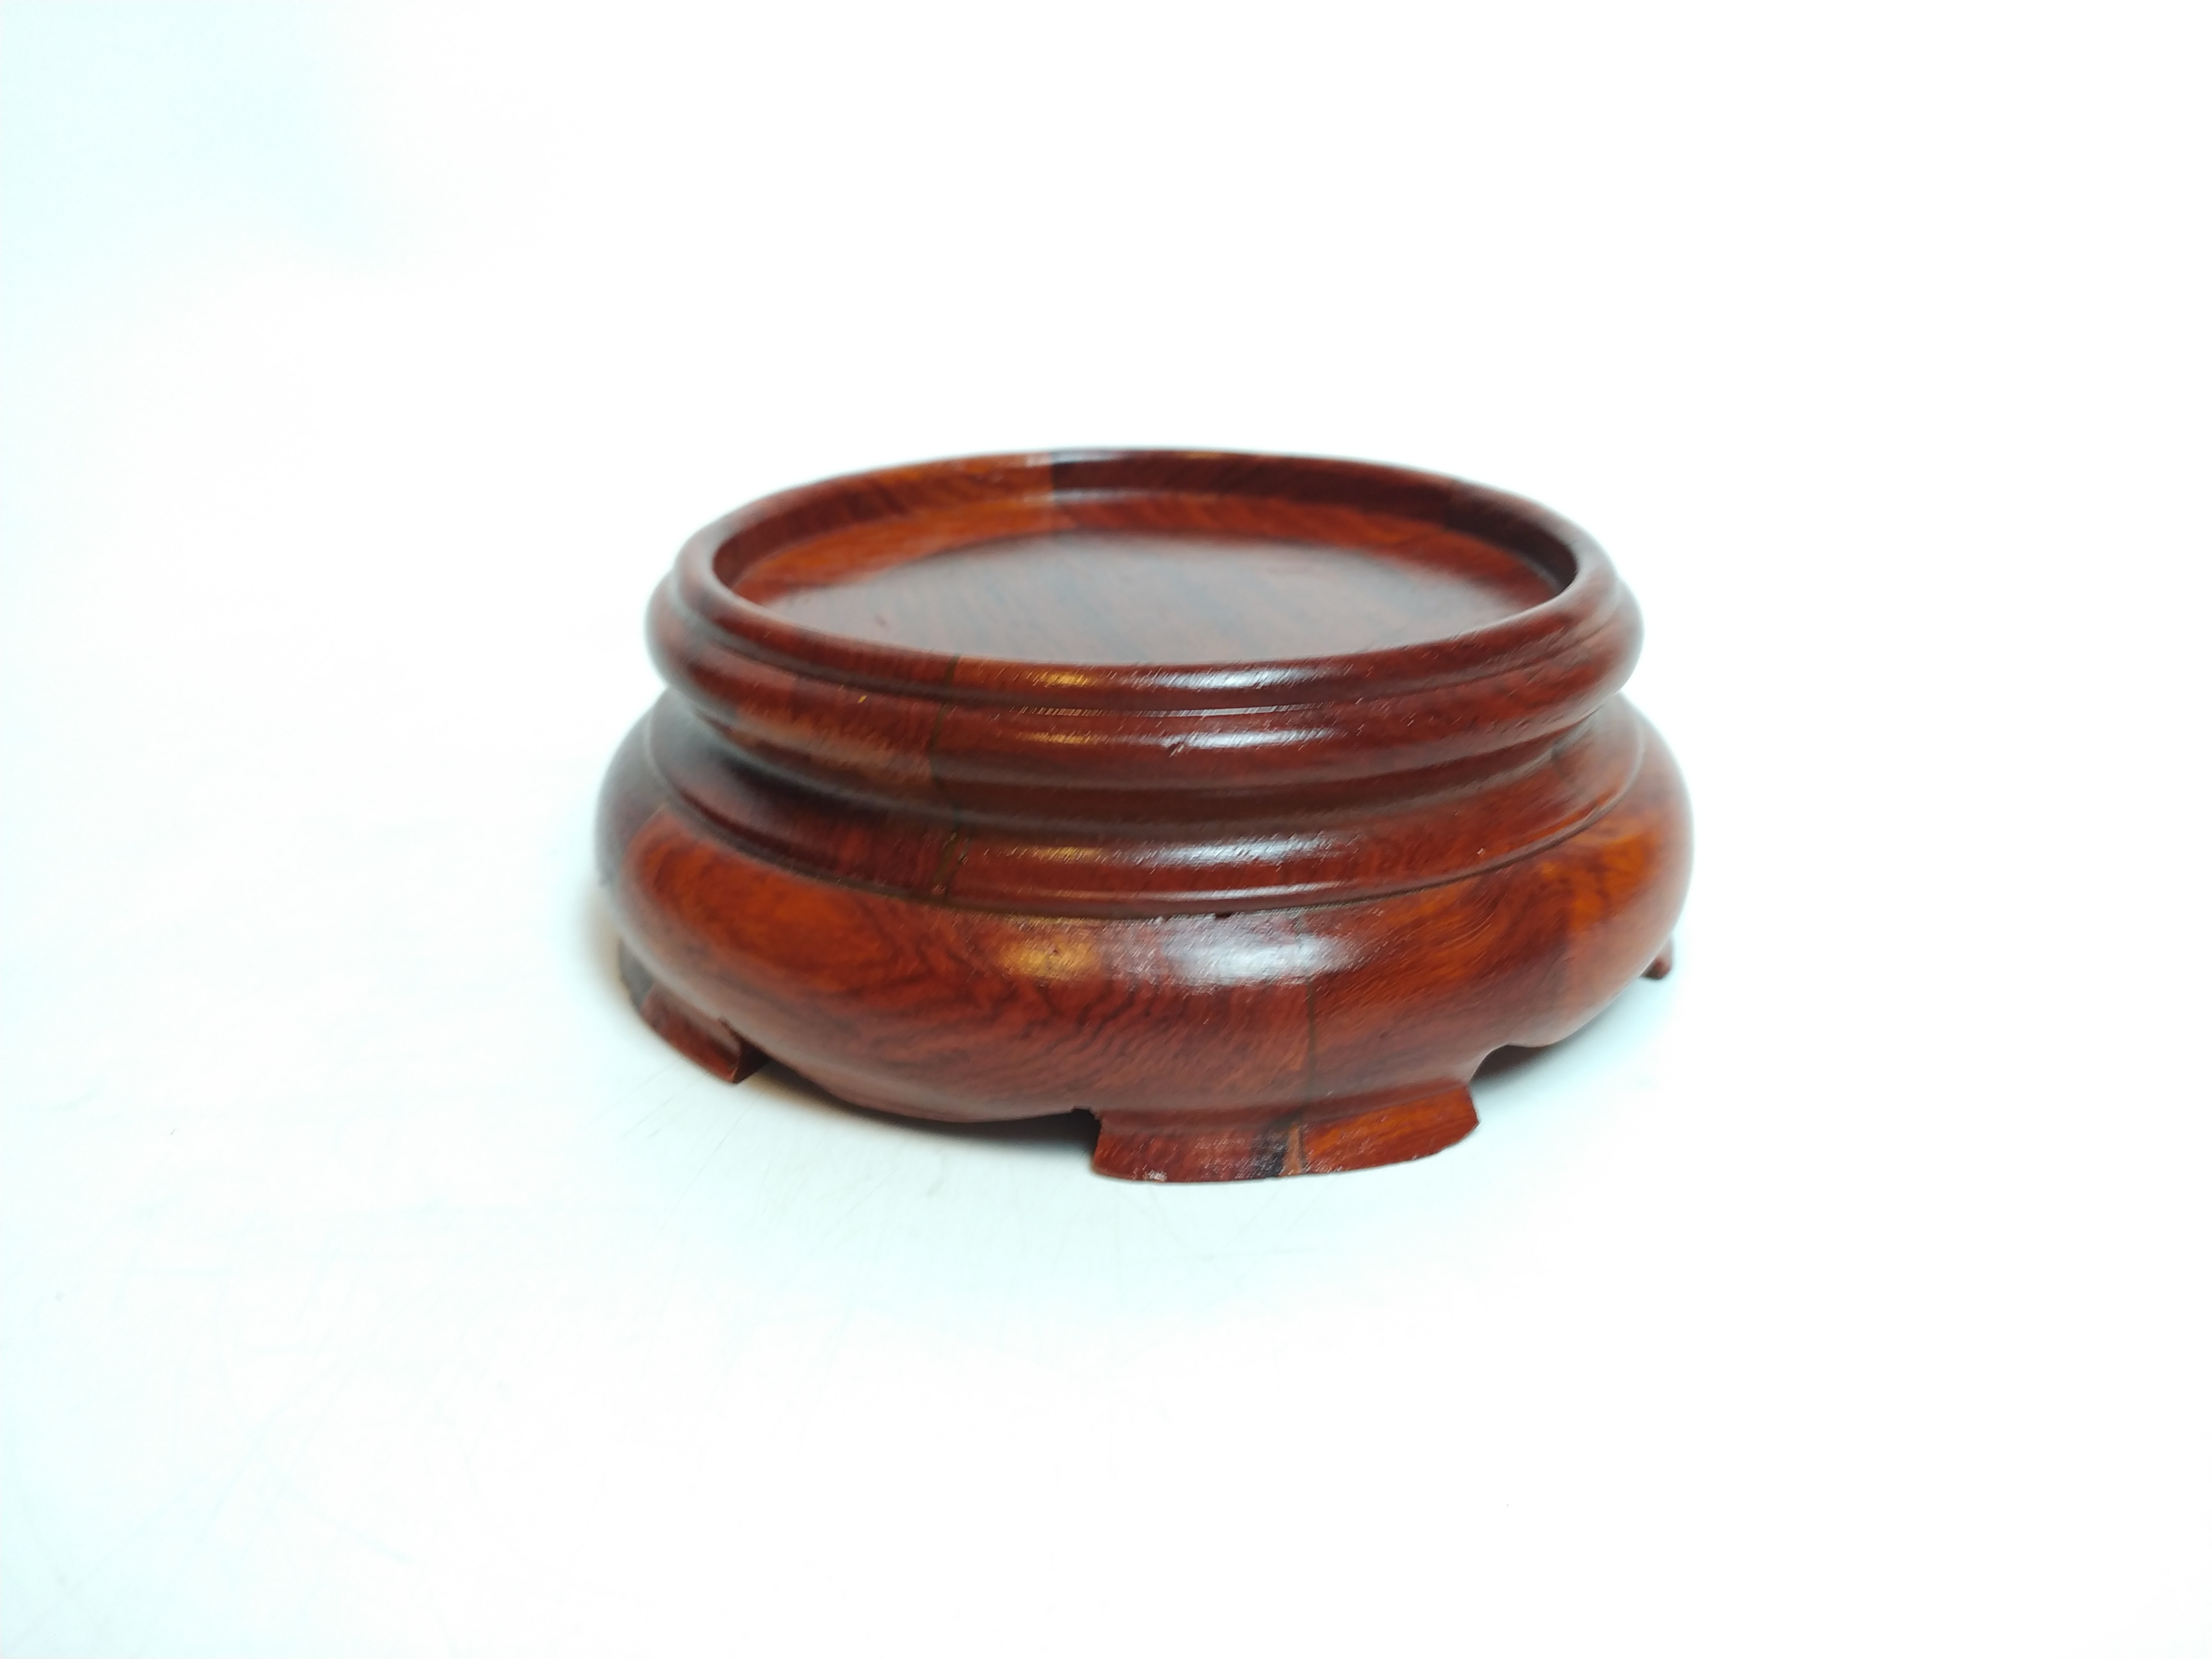 Đế Bát Hương chất liệu gỗ hương (kê bát hương) - Đk 15cm, cao 5.5cm